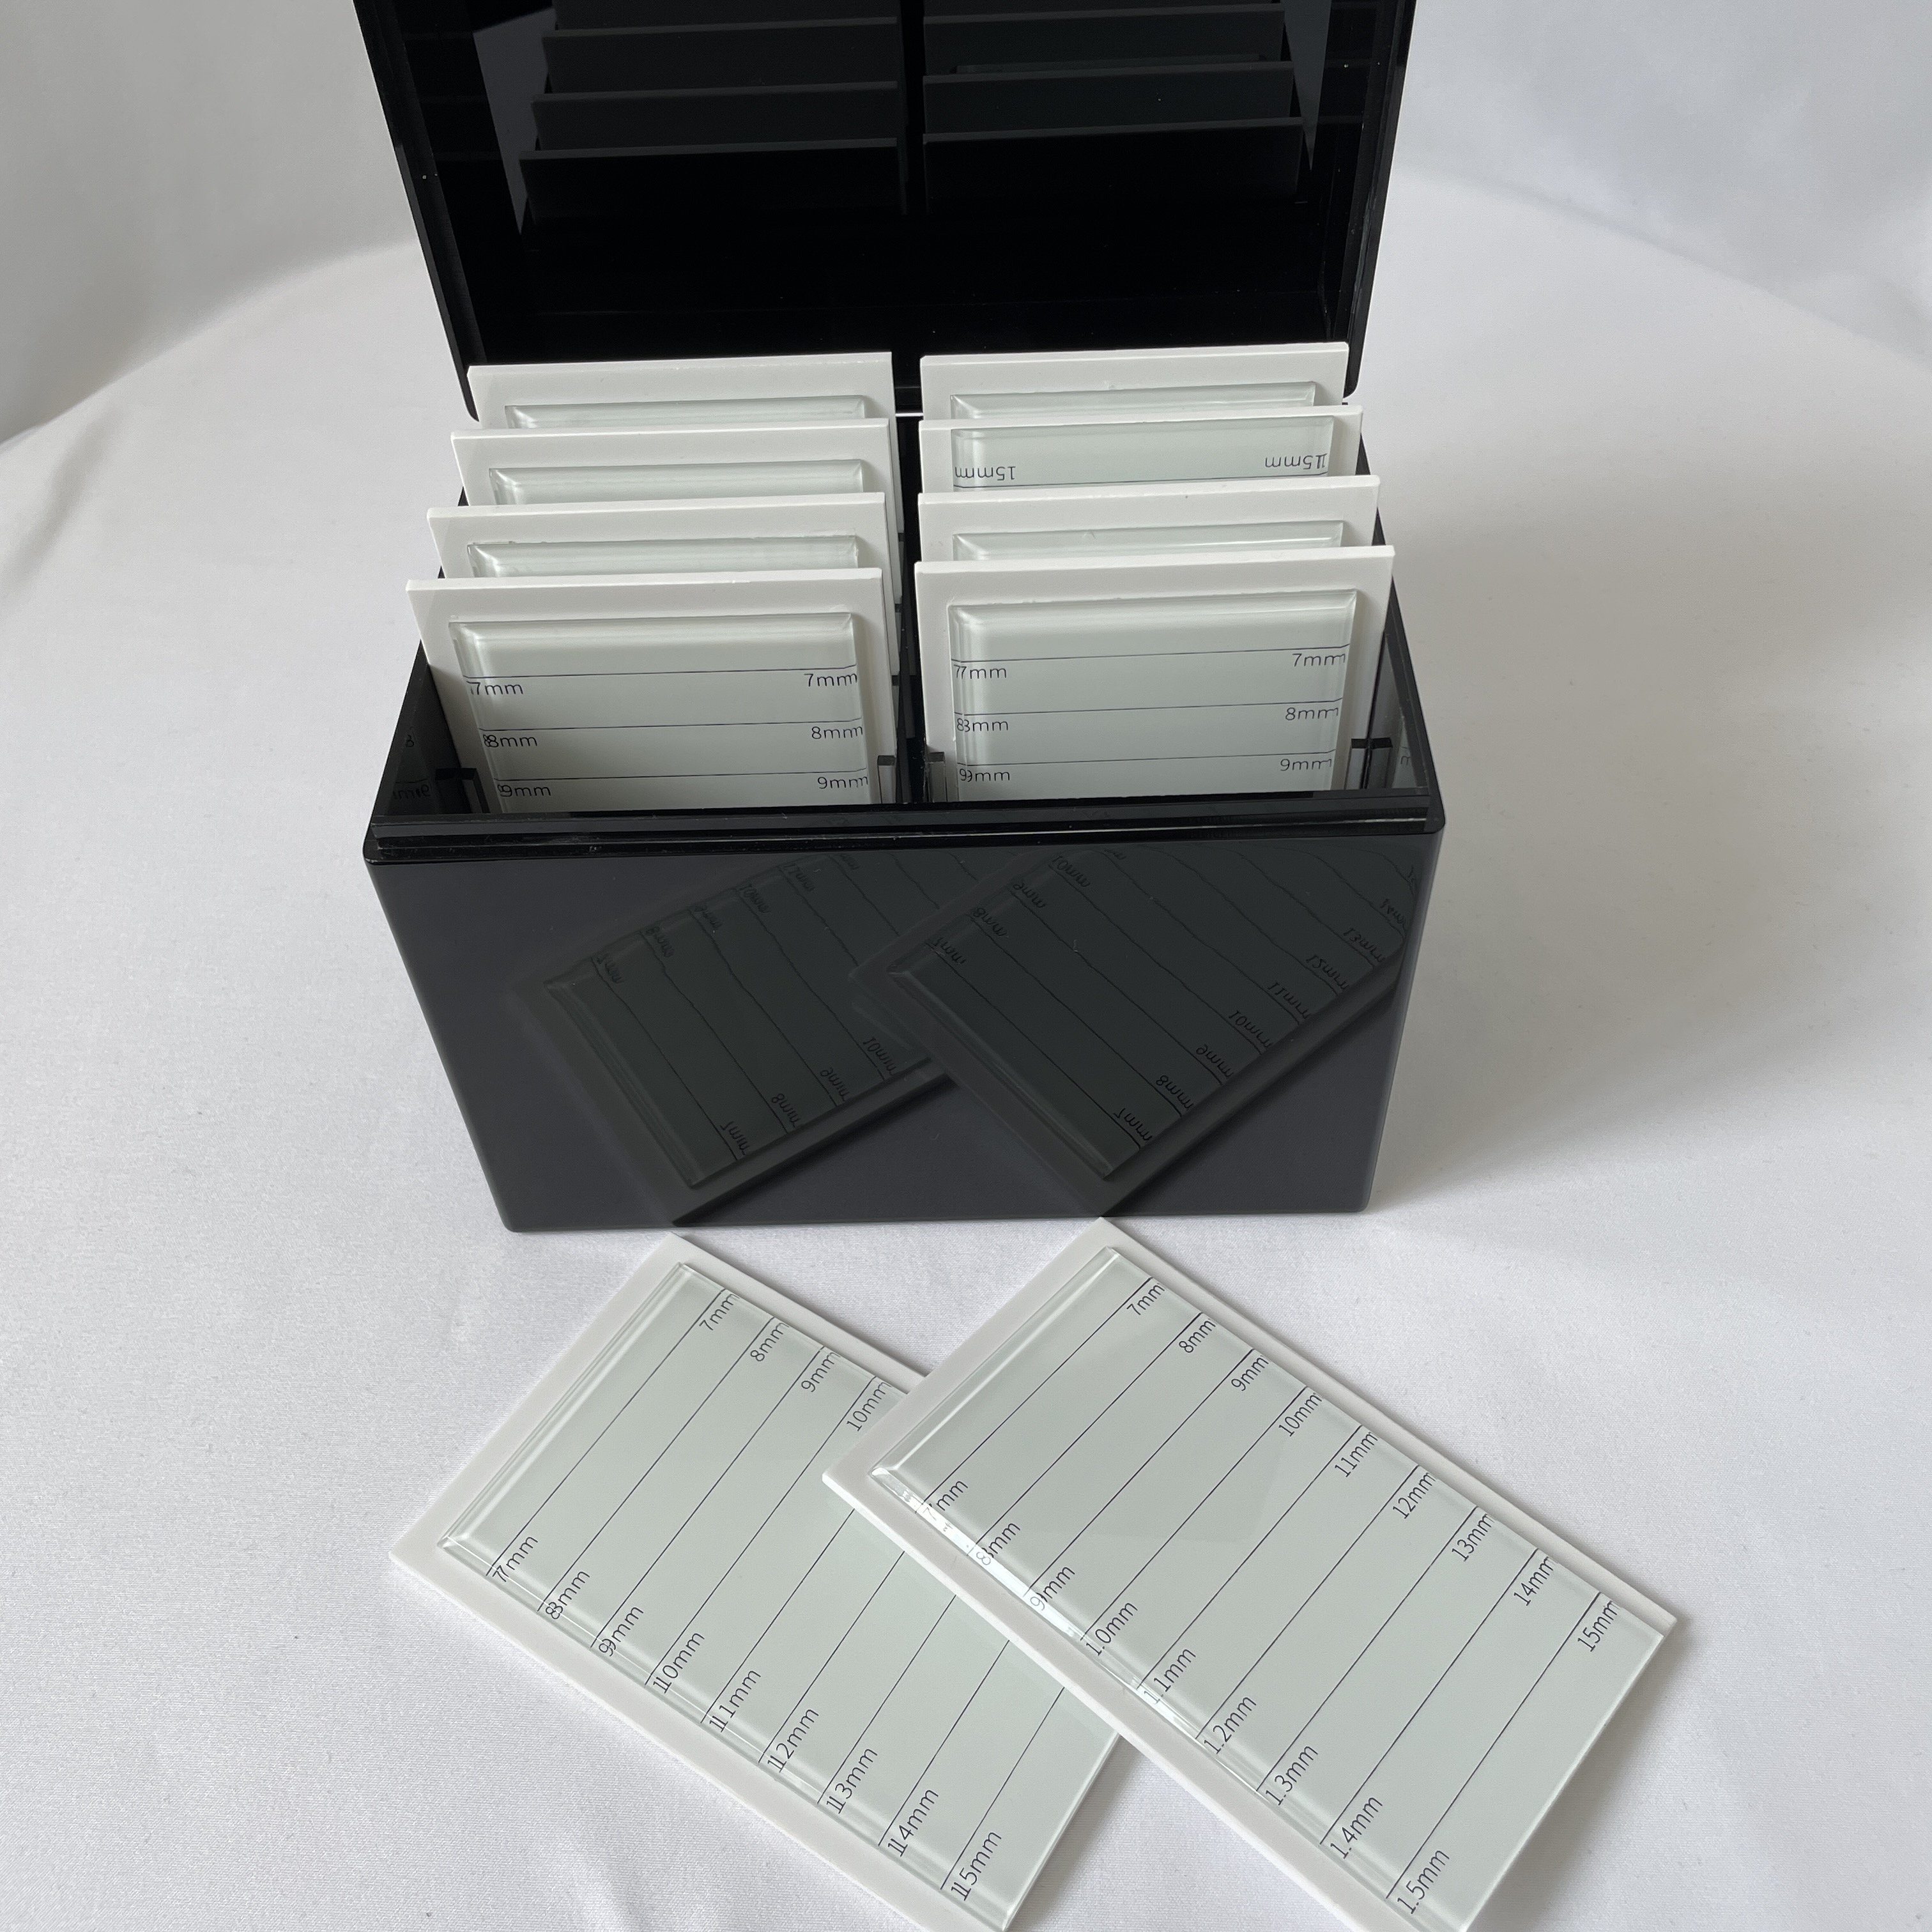 kotak extension palastik pinset bulu mata strips baki panyimpen kasus tampilan stand rak wadah organizer bulu soca acrylic jelas